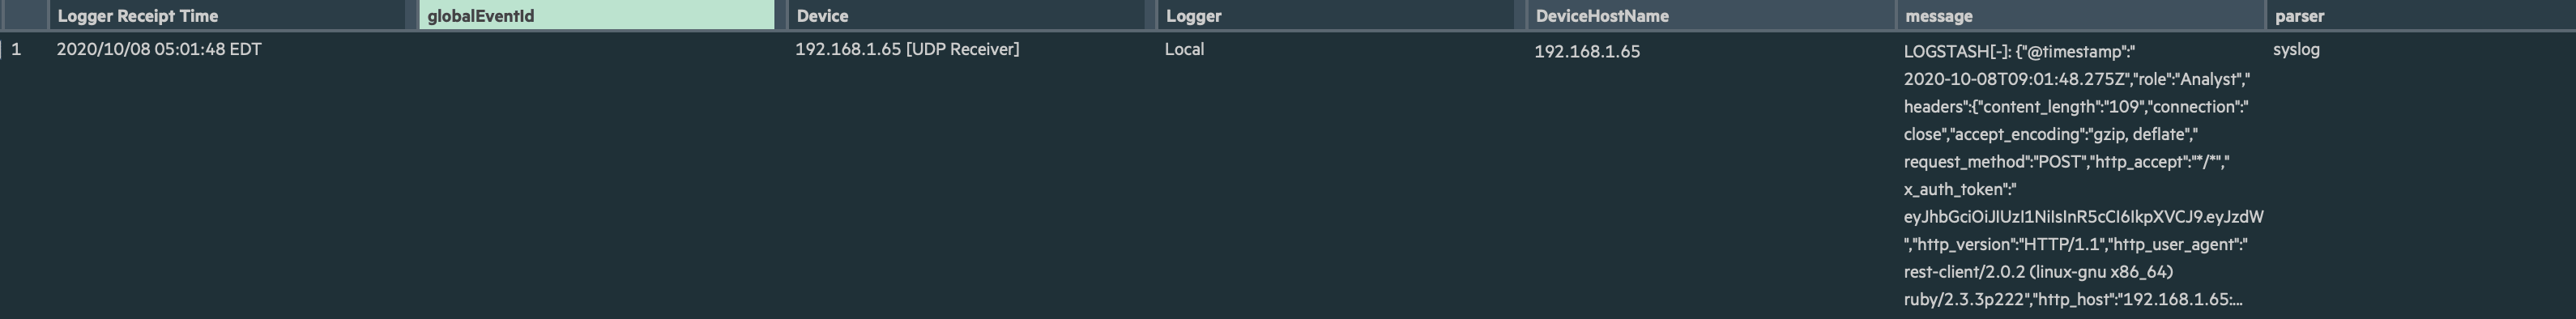 Карточка о новом пользователе Logstash в ArcSight Logger